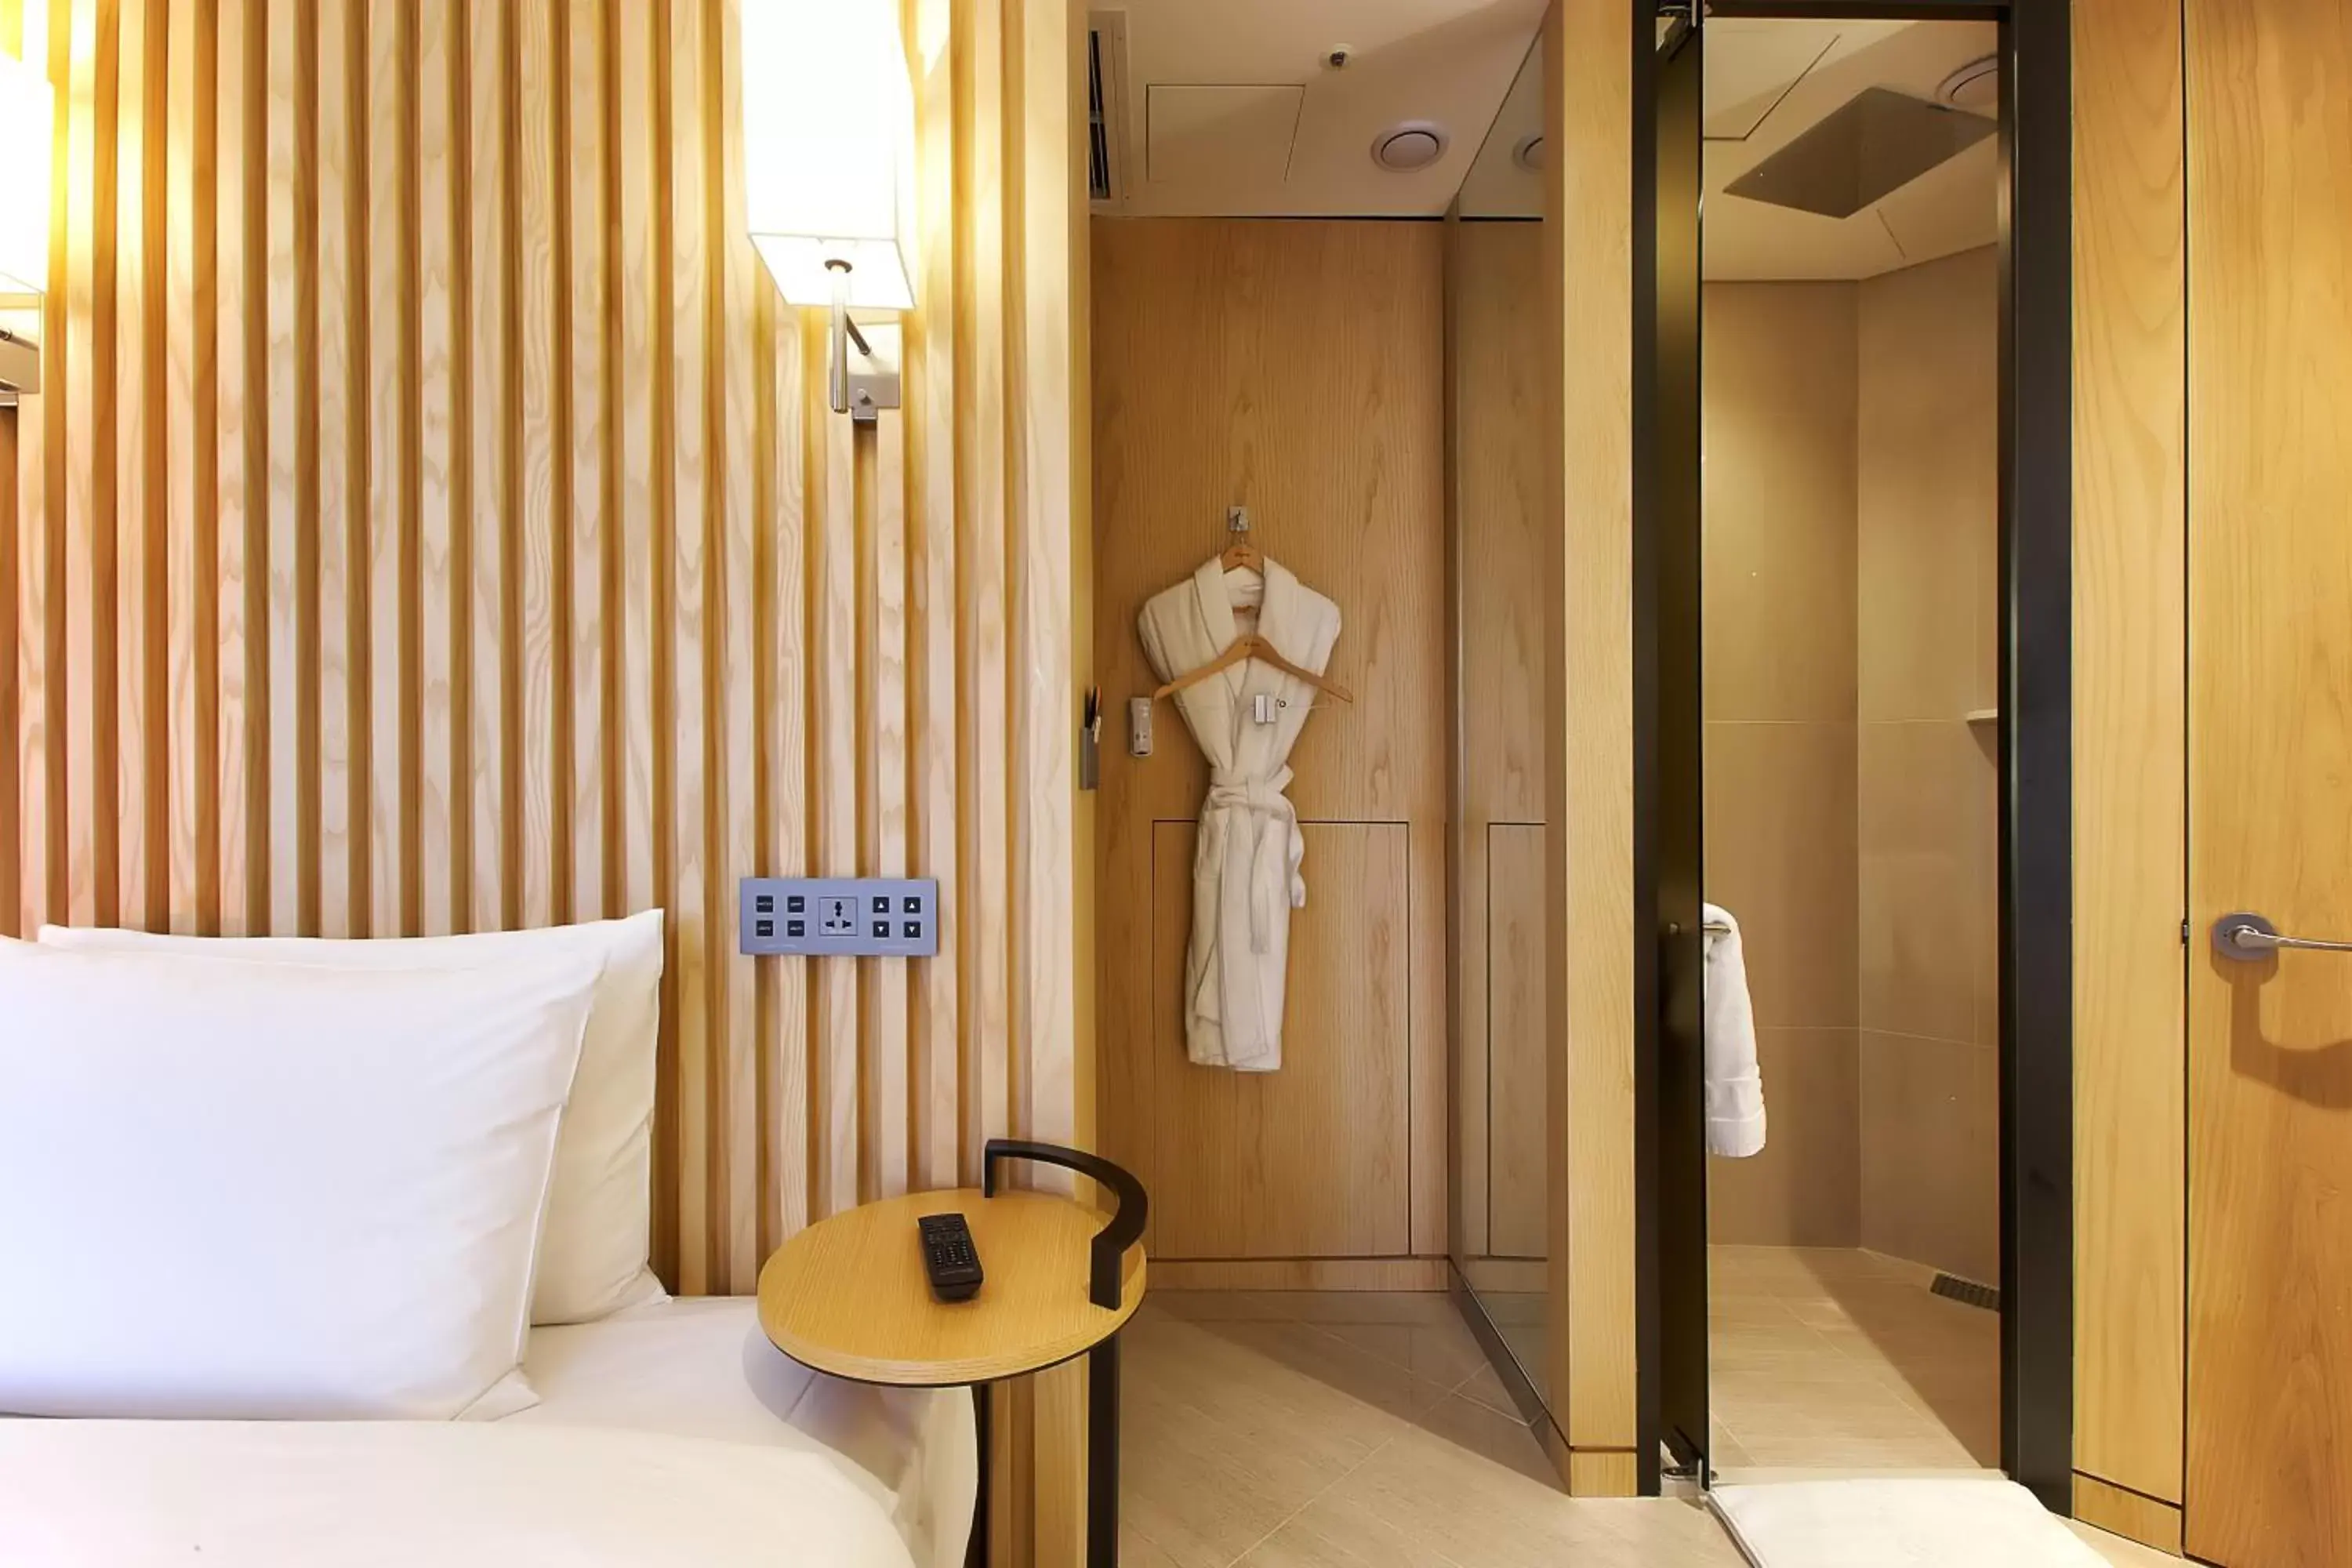 Decorative detail, Bathroom in Hotel Entra Gangnam